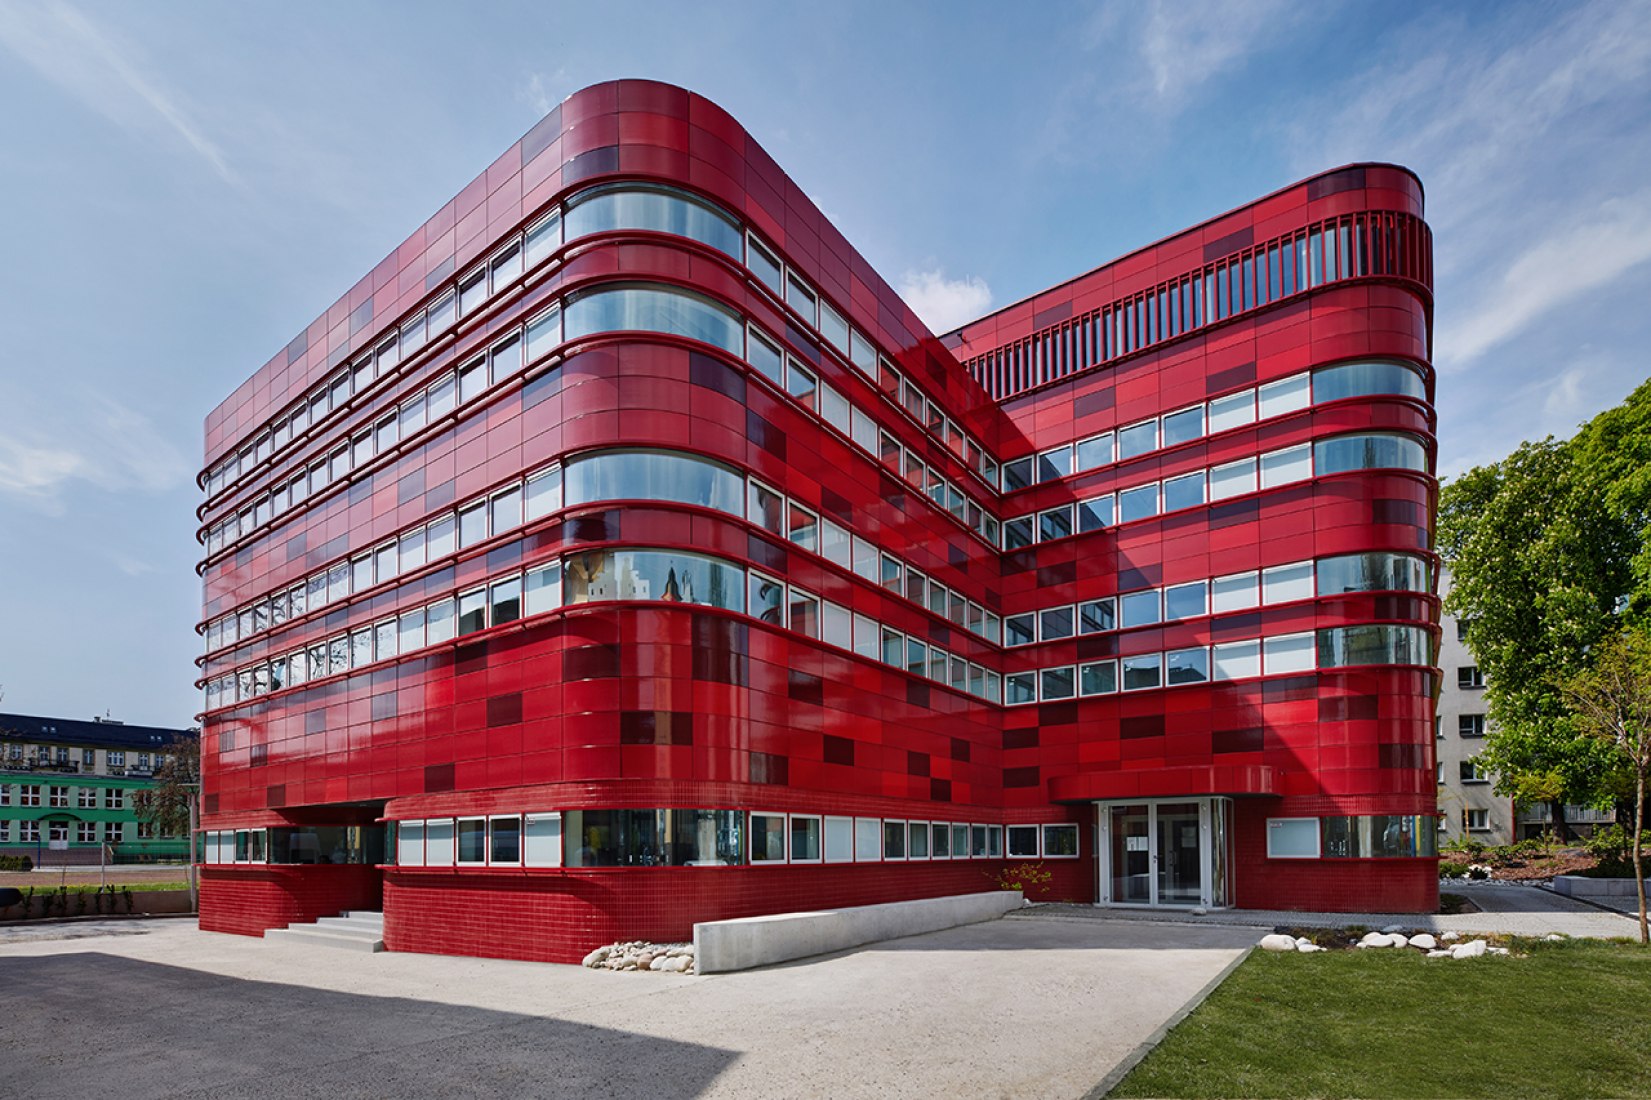 Regional Blood Center in Racibórz, Poland by FAAB Architektura. Photograph by Bartłomiej Senkowski.